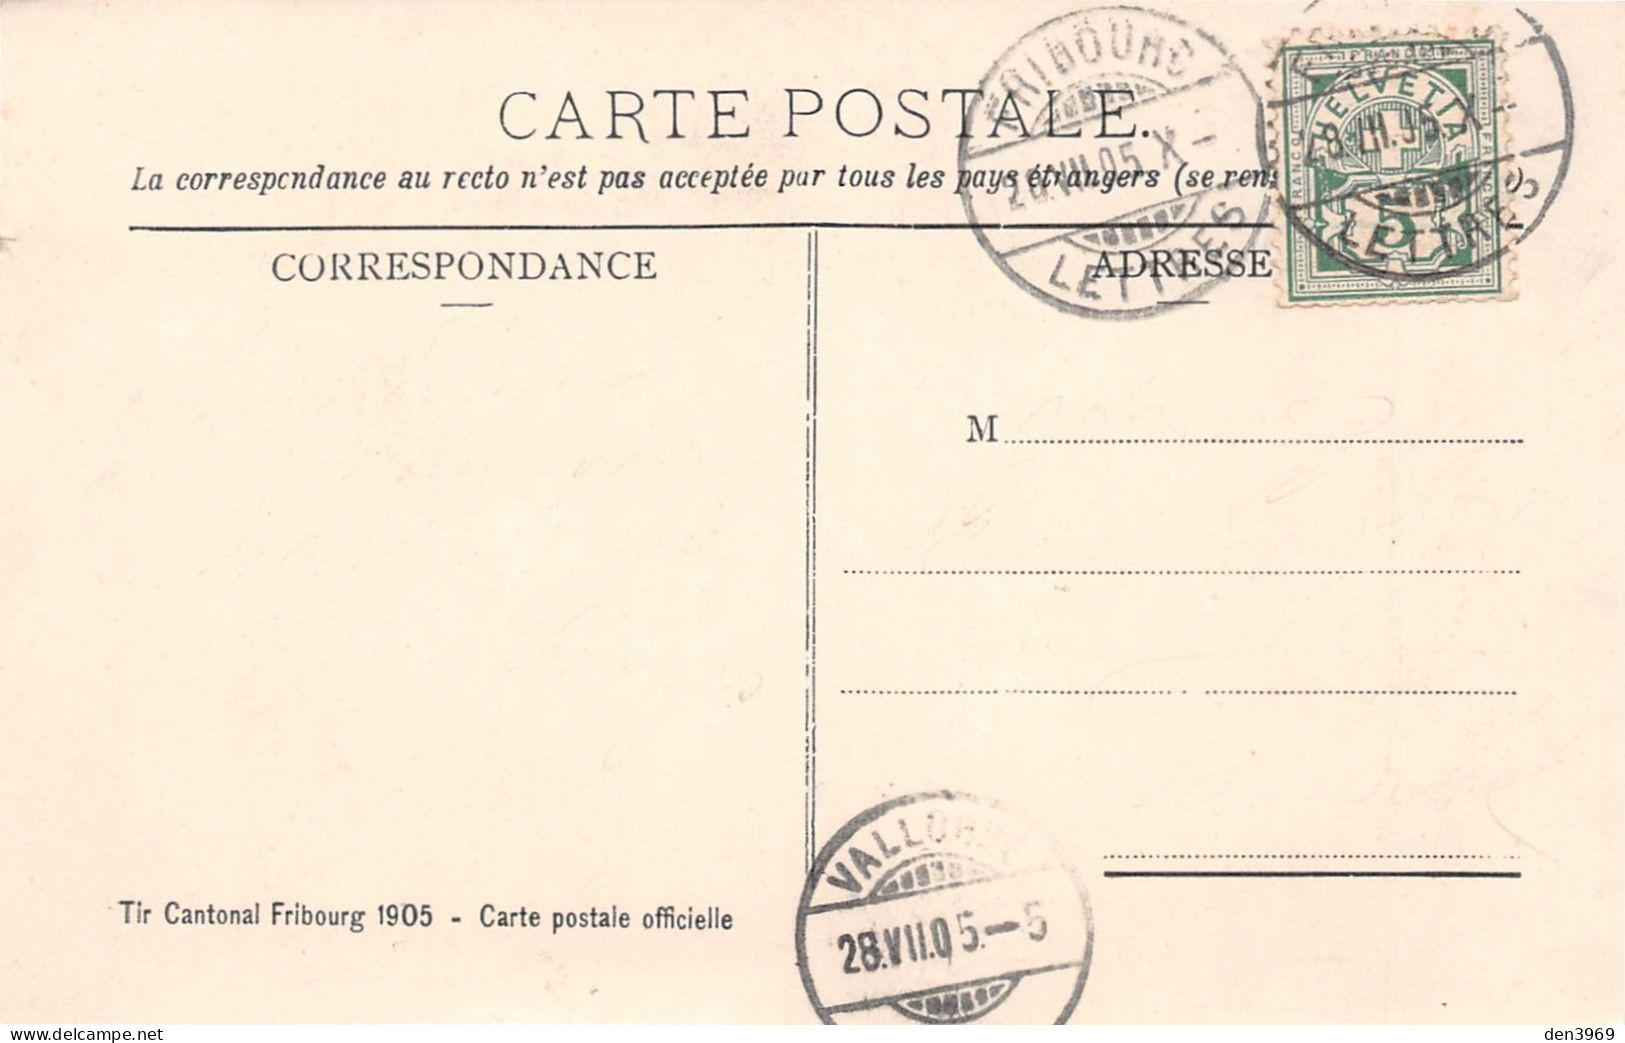 Suisse - FR - FRIBOURG - Tir Cantonnal - Illustrateur Joseph Gasteton - Carte Postale Officielle - Voyagé 1905 (2 Scans) - Fribourg